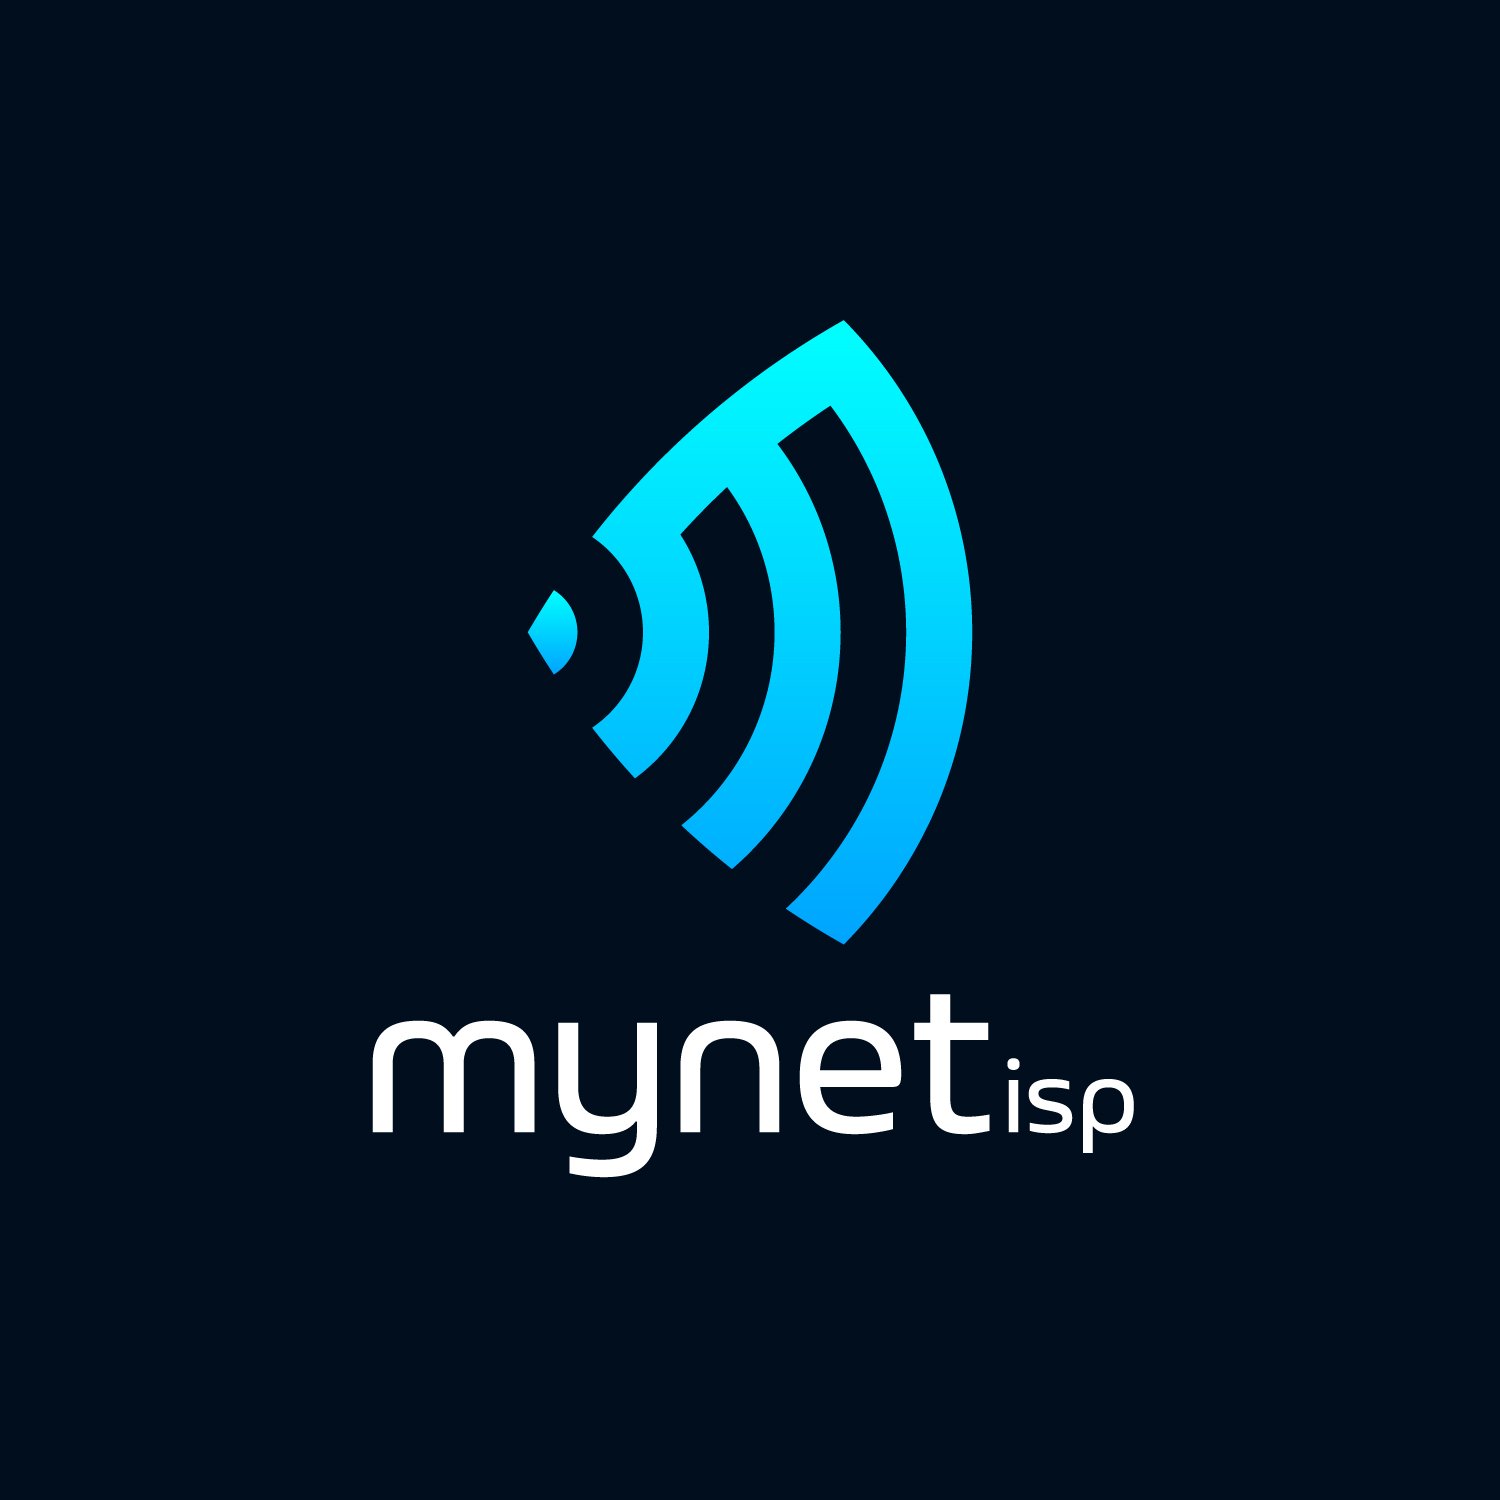 MyNet ISP